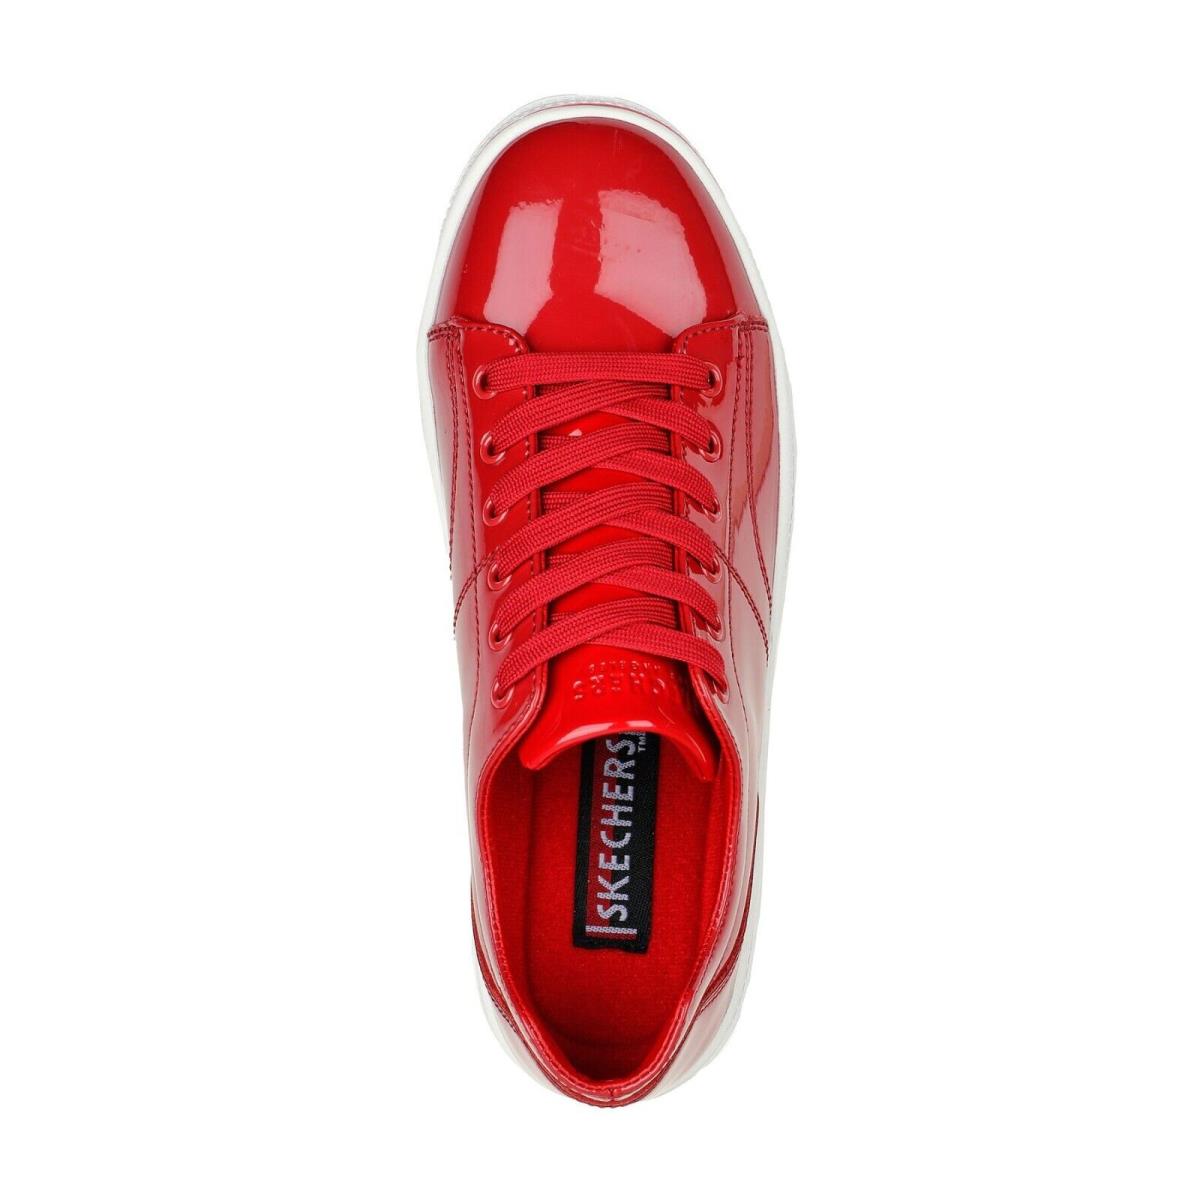 Skechers shoes Roadies - Red 1